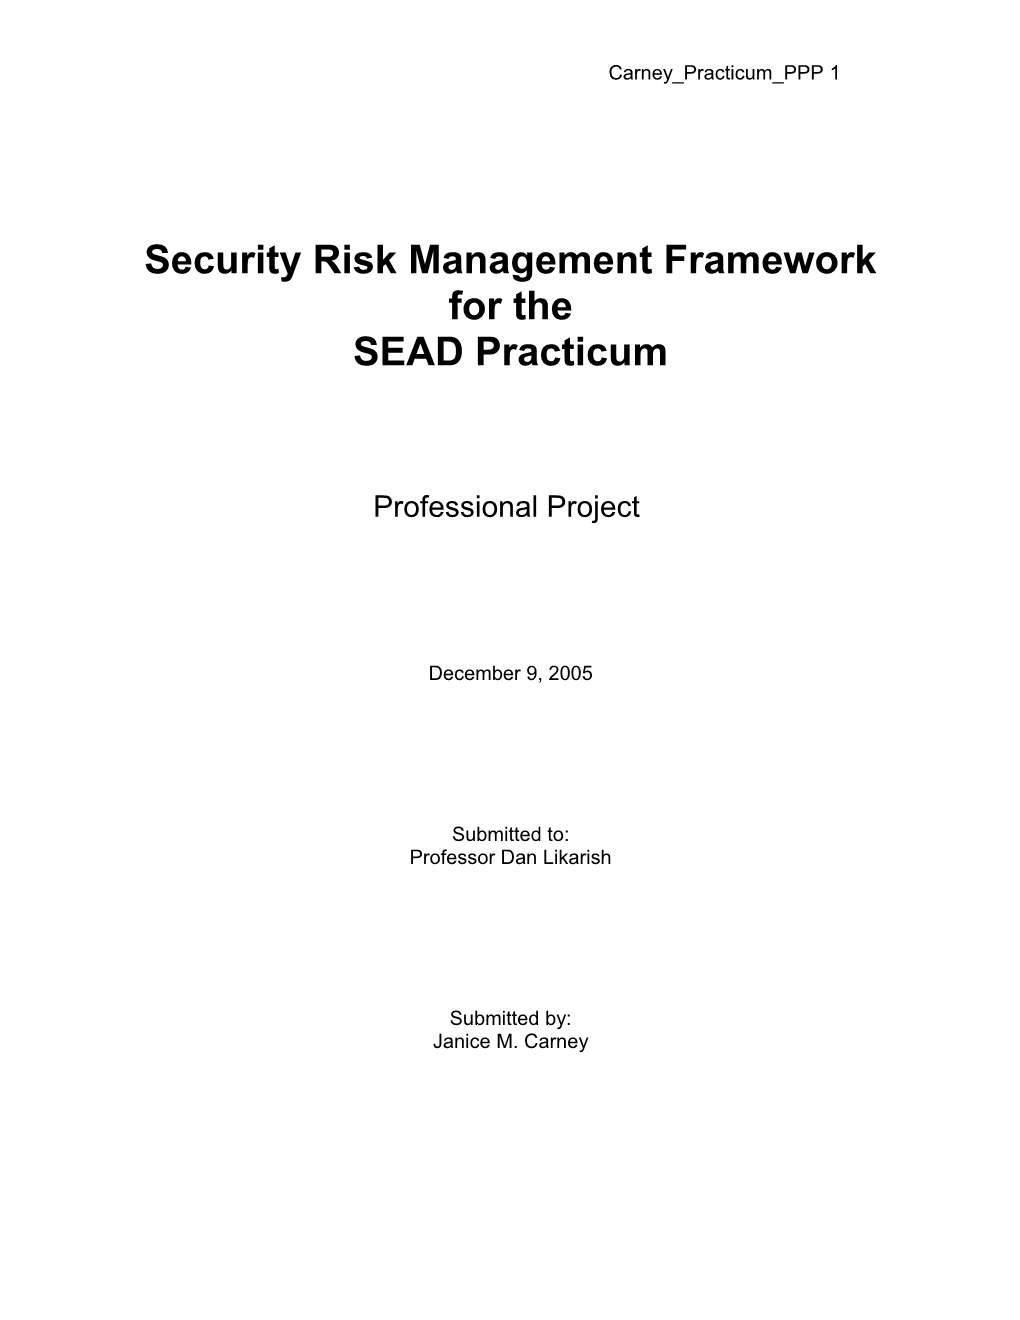 Security Risk Management Framework